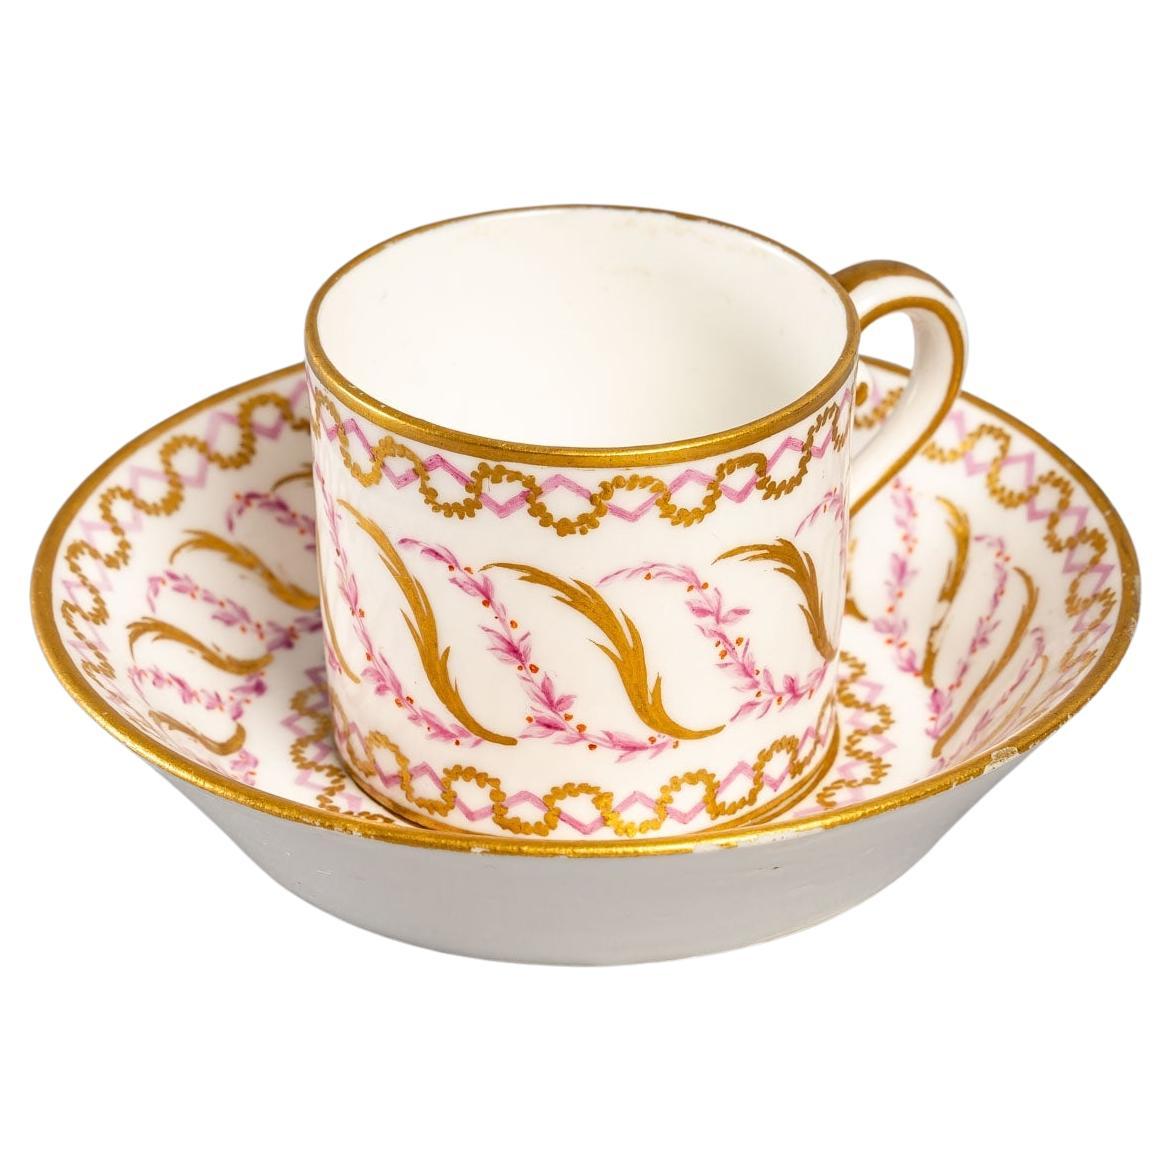 Tasse à café en porcelaine de Sèvres, du XVIIIe siècle